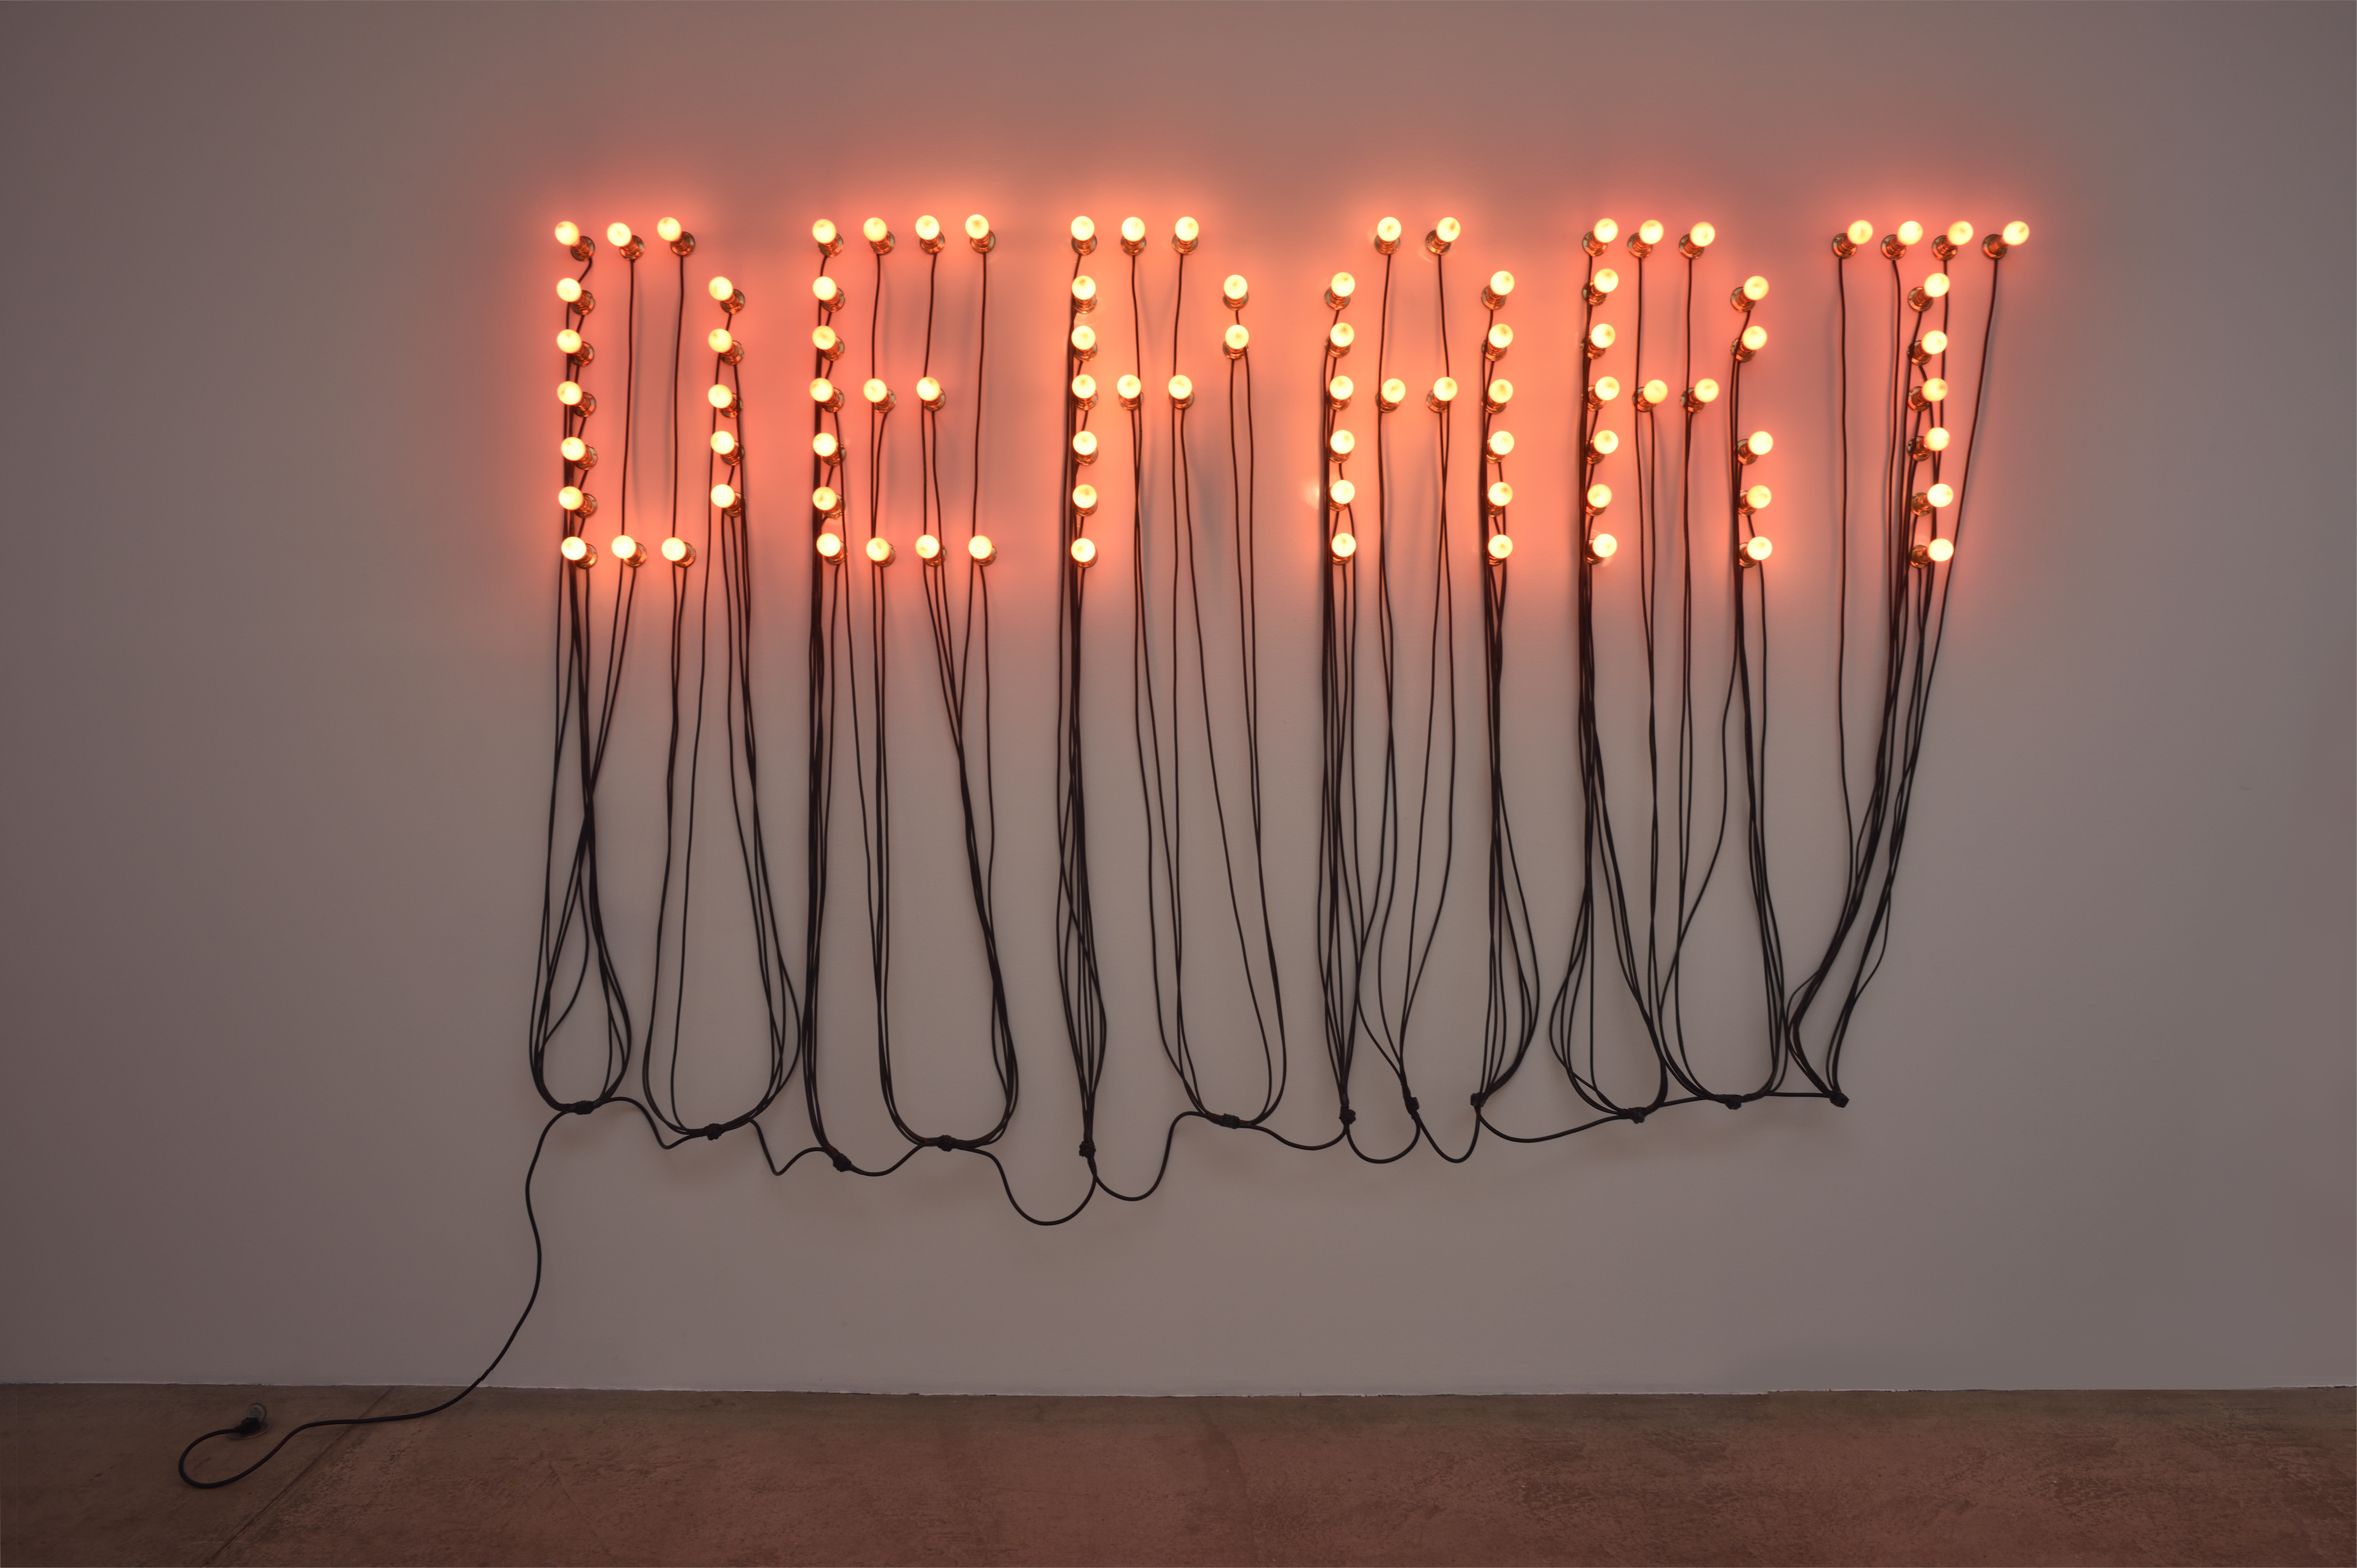 Départ, 2015 Ampoules rouges, câbles électriques noirs, 185 x 283 cm. Courtesy Christian Boltanski et Galerie Marian Goodman. Photo © Rebecca Fanuele